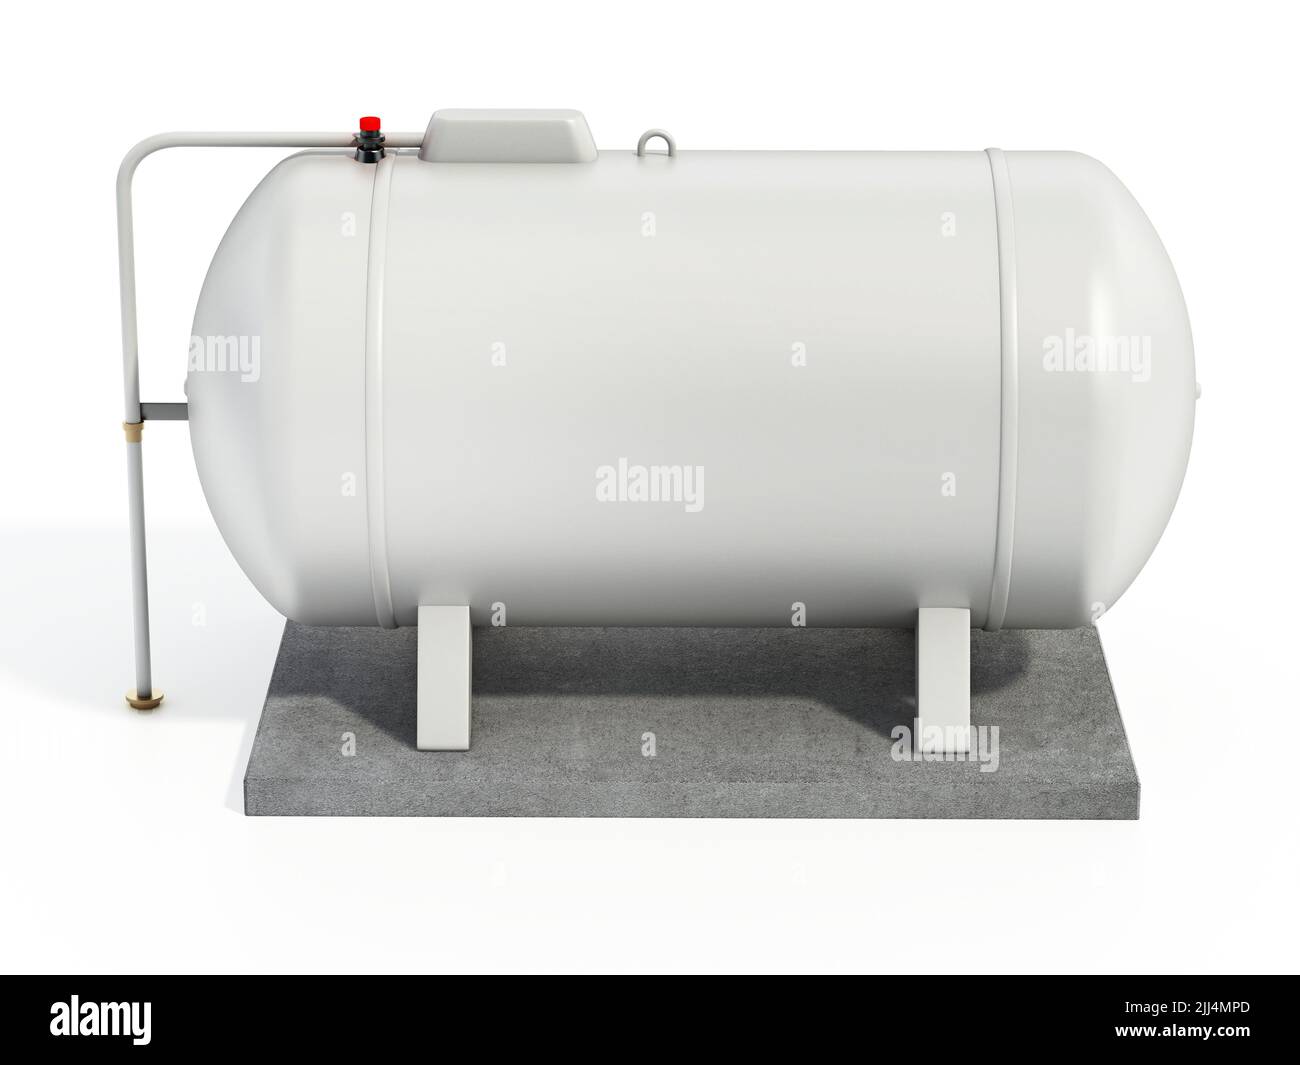 Tanque de propano aislado sobre fondo blanco. Ilustración 3D. Foto de stock